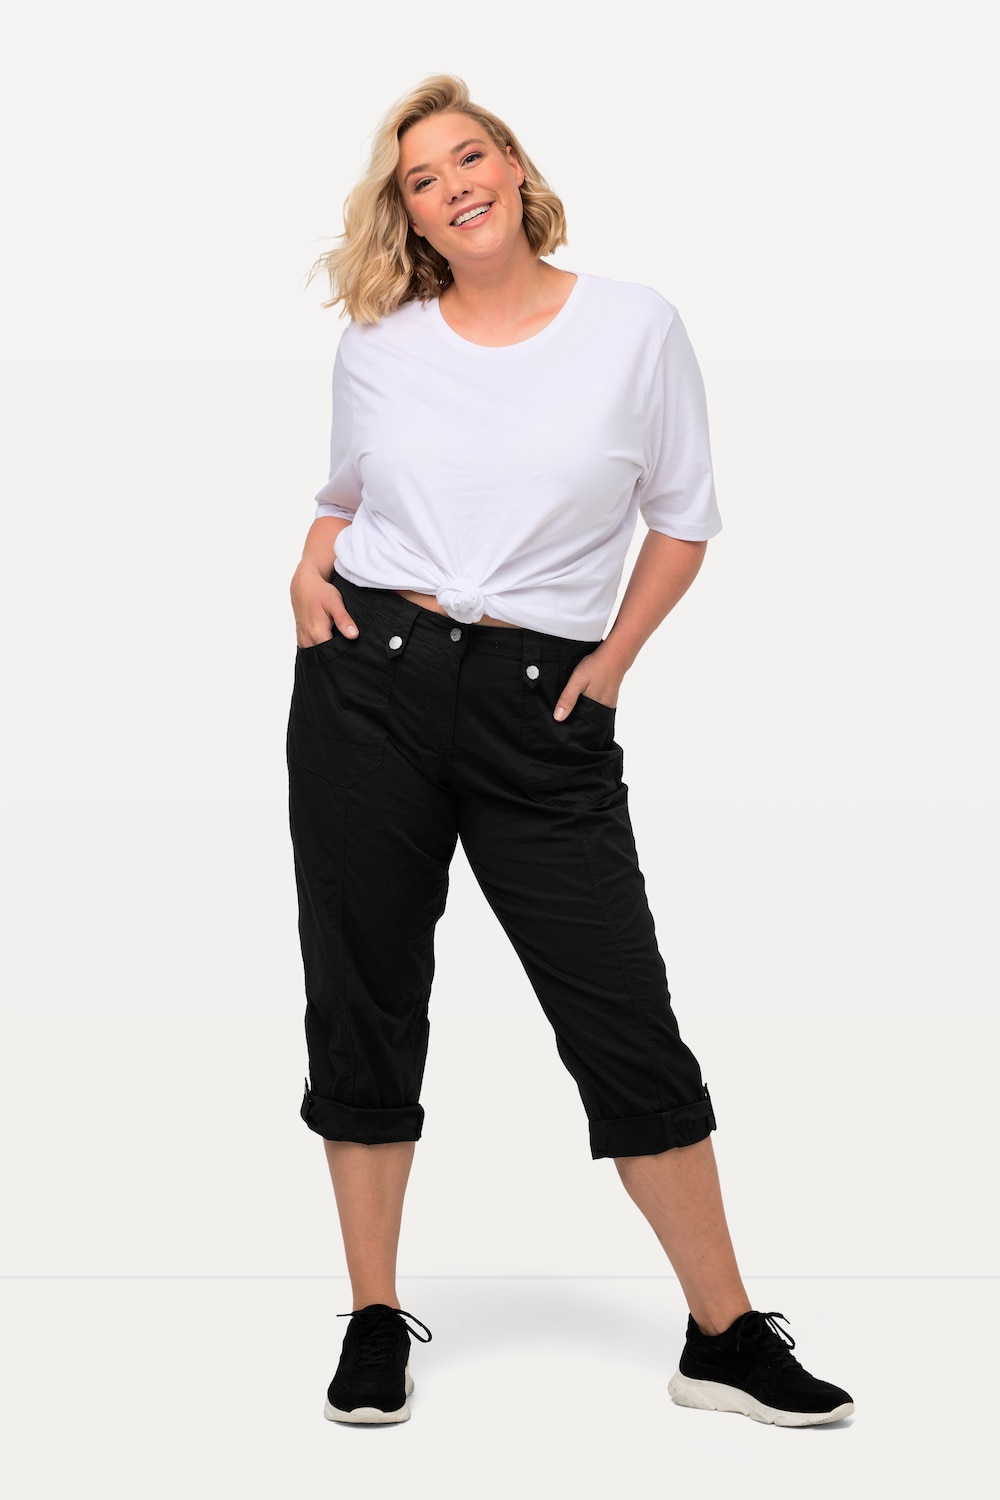 grandes tailles pantalon cargo 7/8 avec attaches, femmes, noir, taille: 44, coton, ulla popken